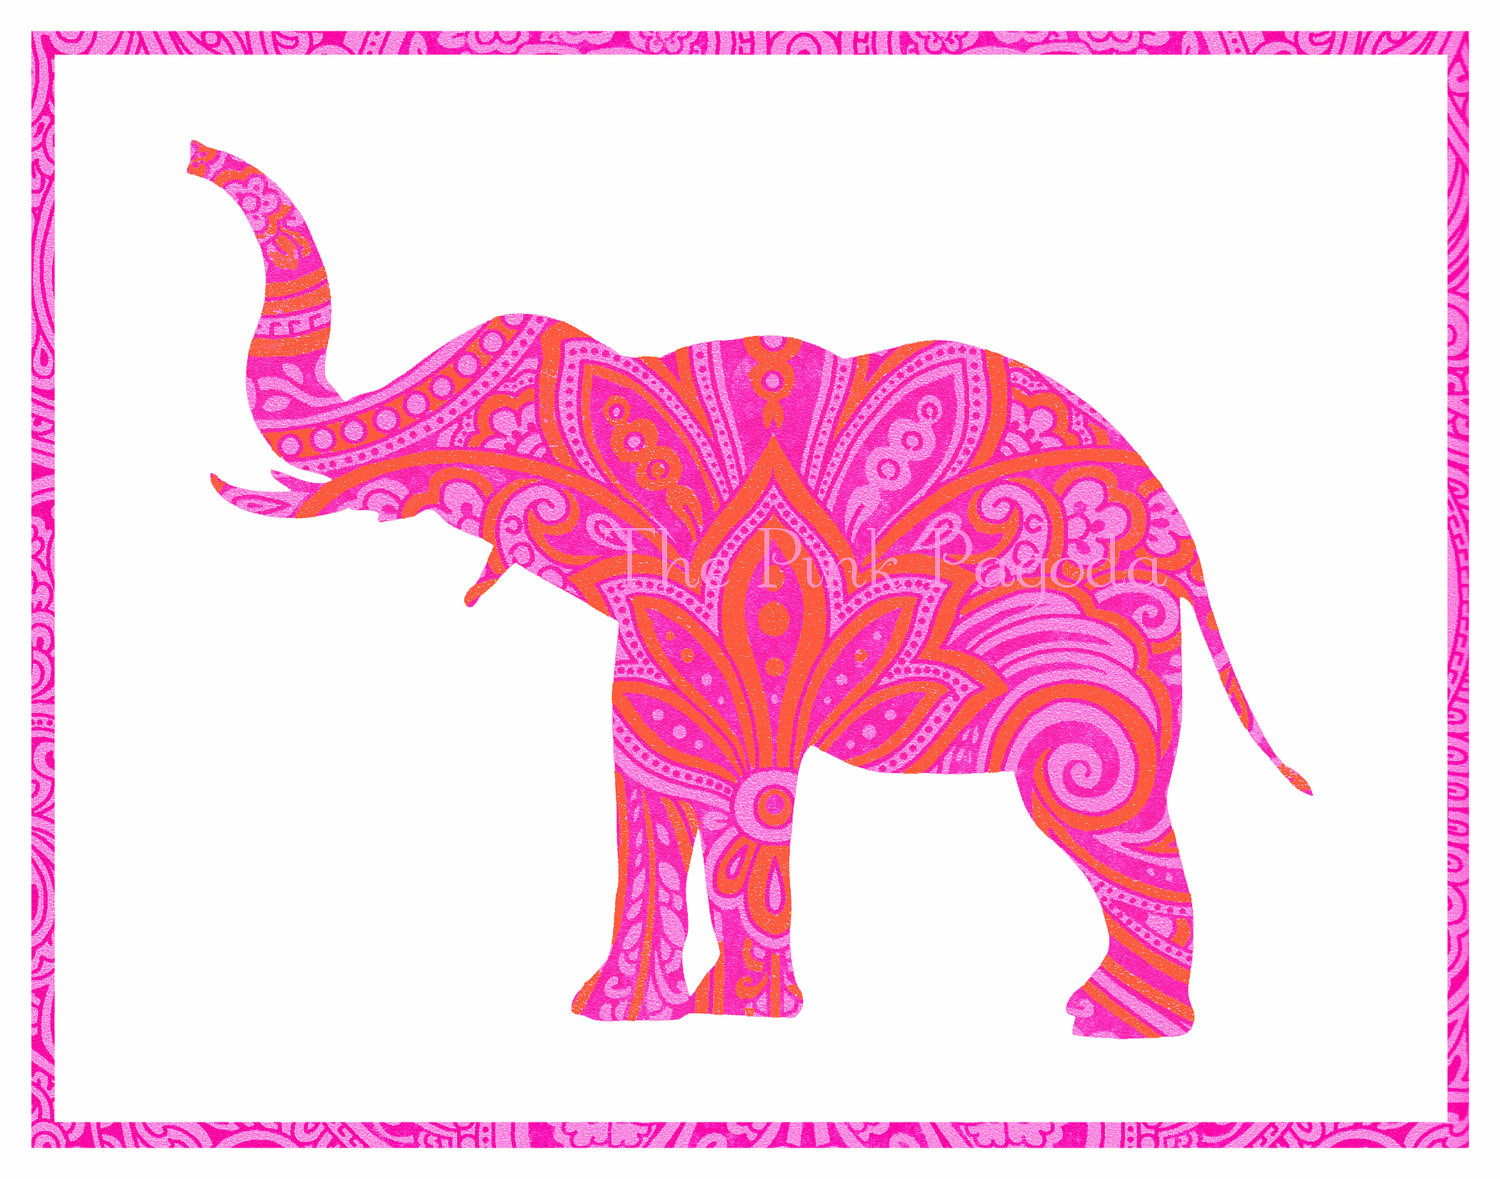 39+] Pink Elephant Wallpaper - WallpaperSafari